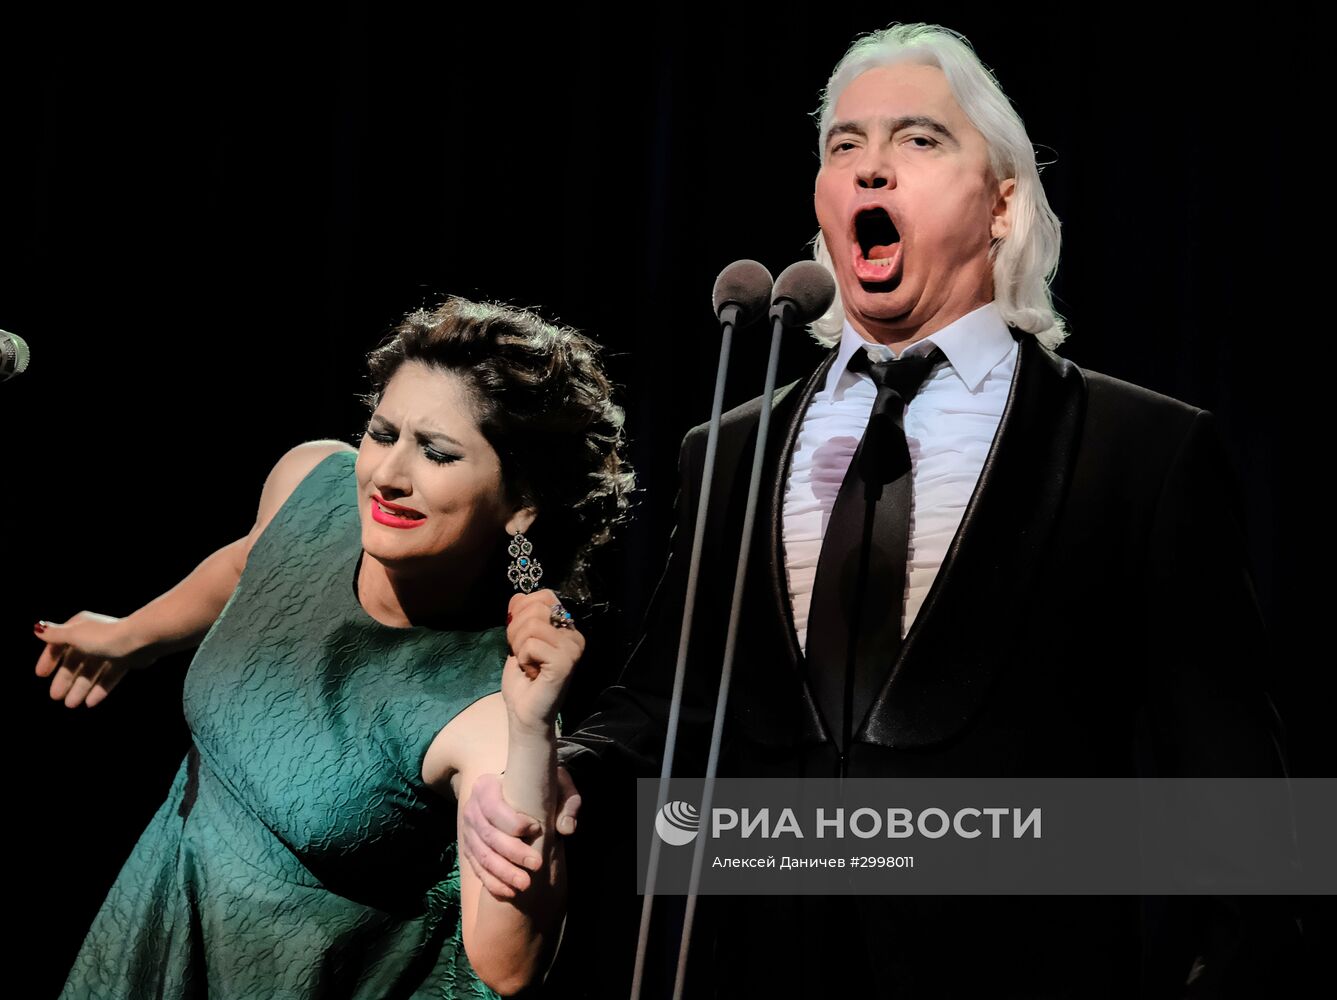 Концерт Дмитрия Хворостовского в Санкт-Петербурге